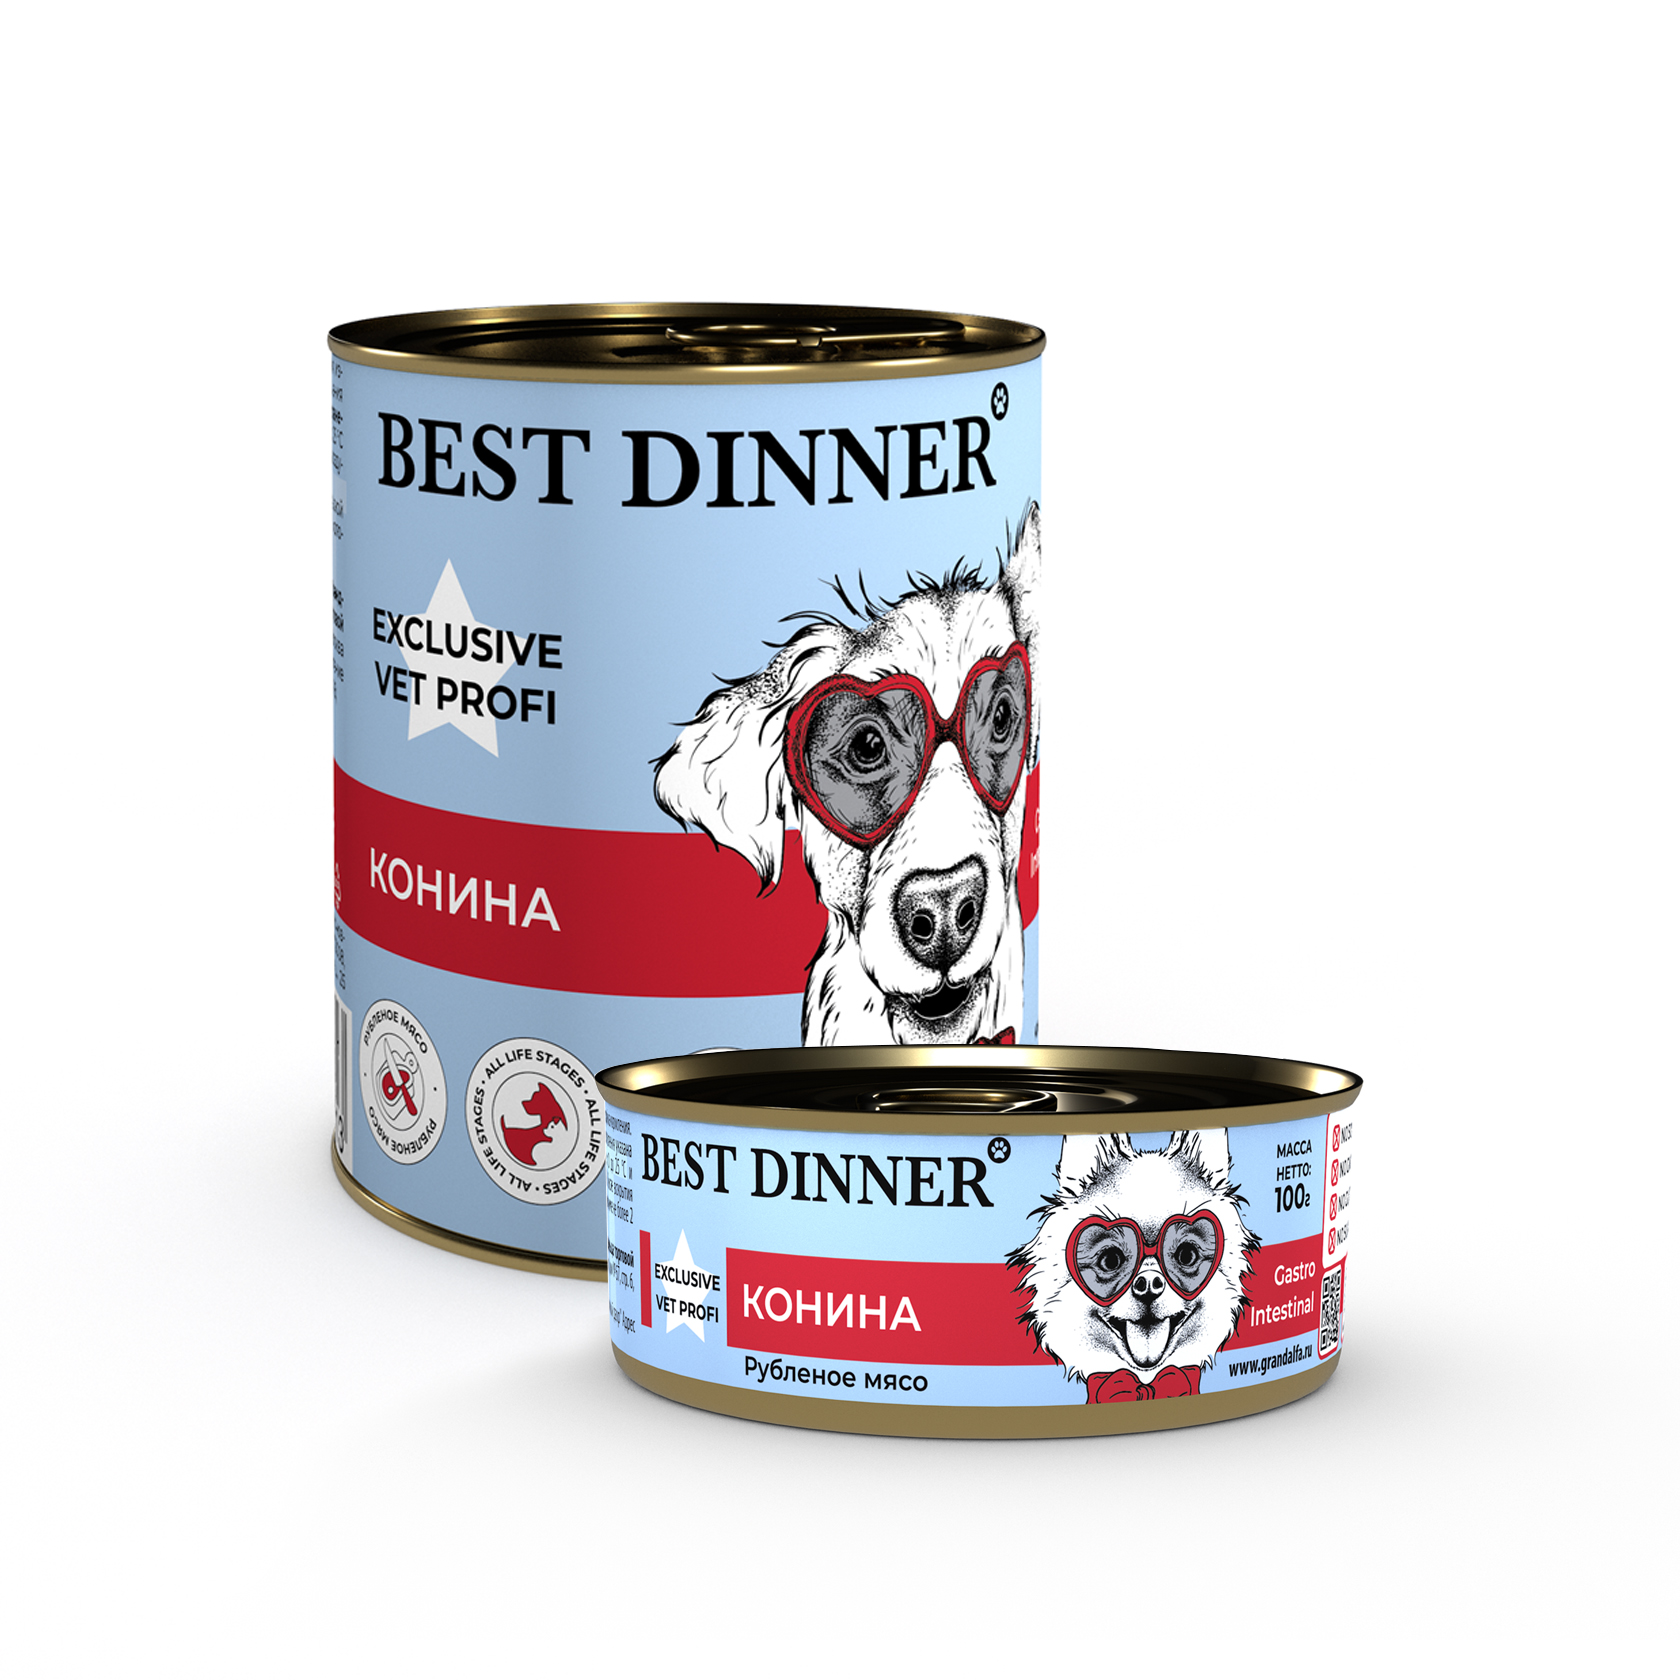 консервы для собак "best dinner exclusive vet profi gastro intestinal" (бест диннер) конина